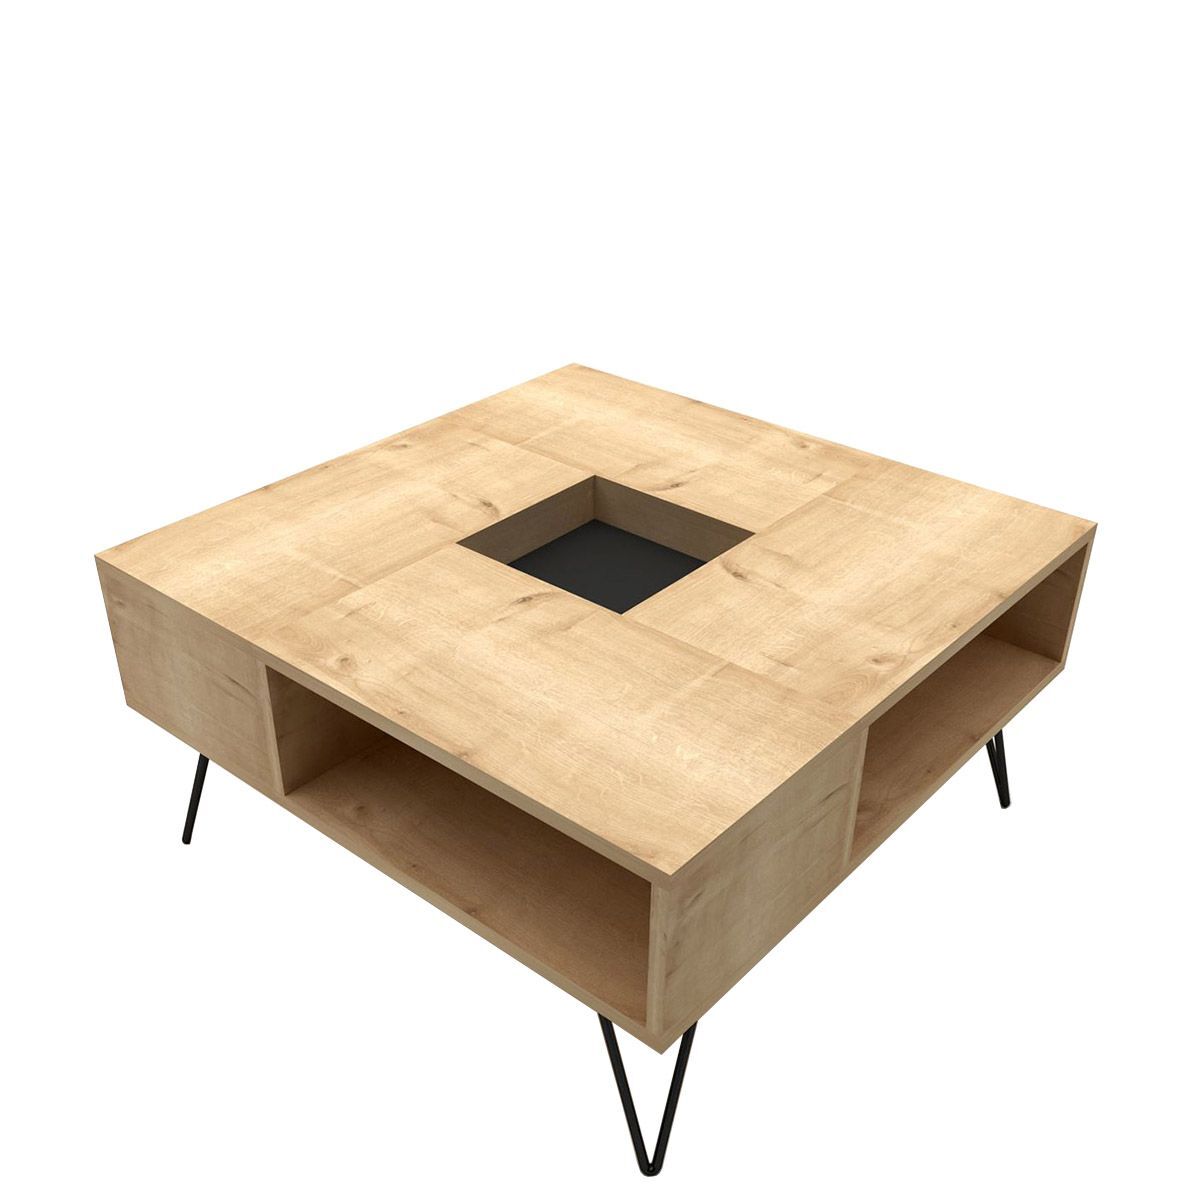 DONOUSA Coffee Table Oak/Black 80x80x38.6cm